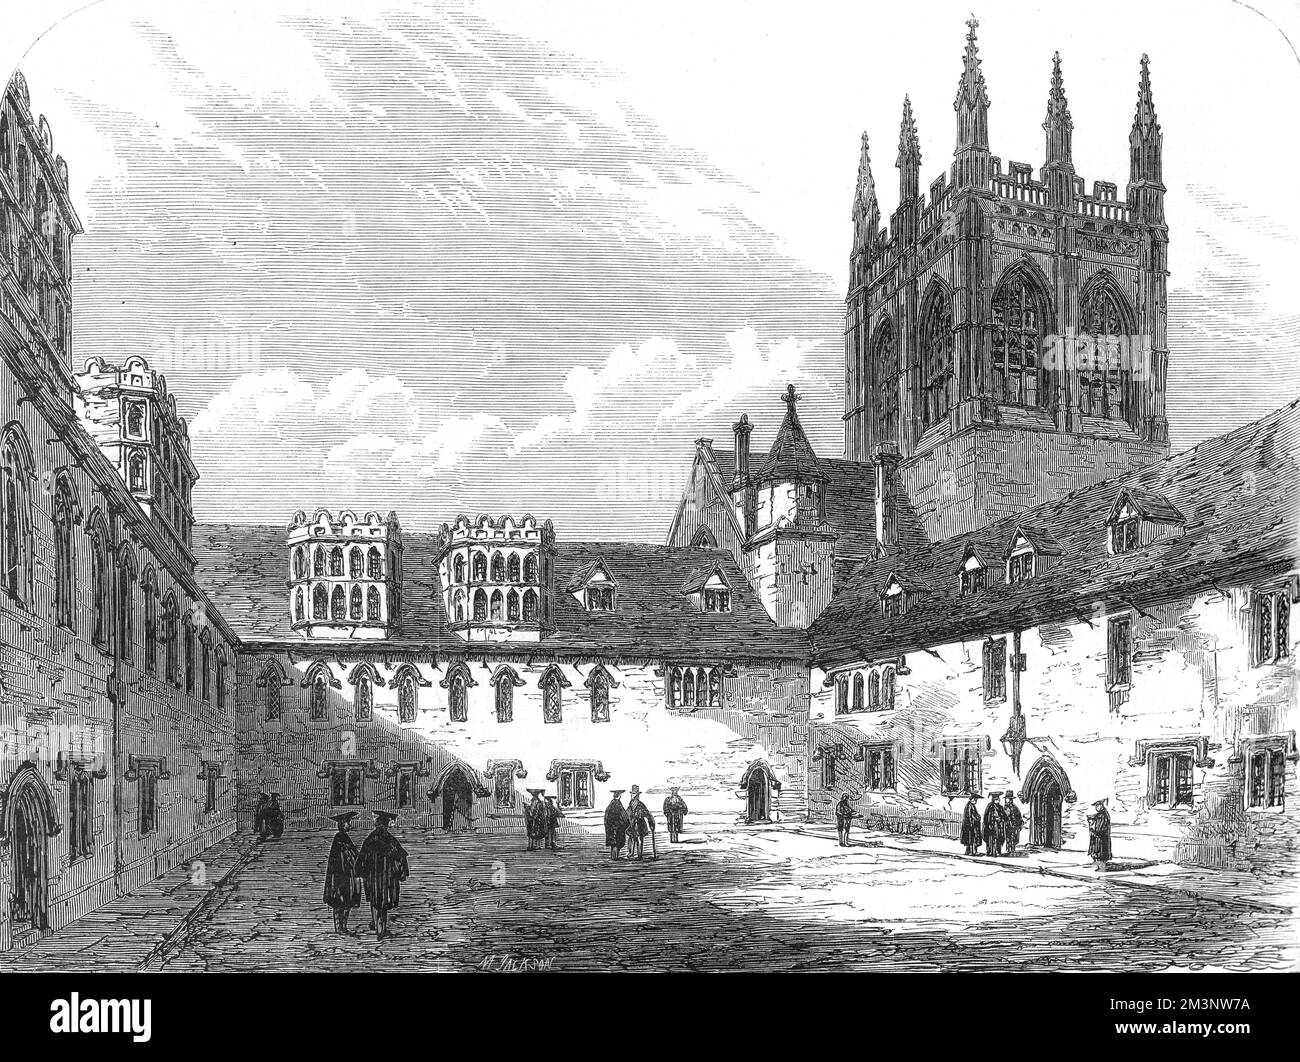 Blick auf das Viereck am Merton College, Oxford, 1864. Dieses Bild erschien als Teil eines Films in den illustrierten London News anlässlich des sechshundertsten Jahrestages der Gründung des Colleges durch Walter de Merton im Jahr 1264. Datum: 1864 Stockfoto